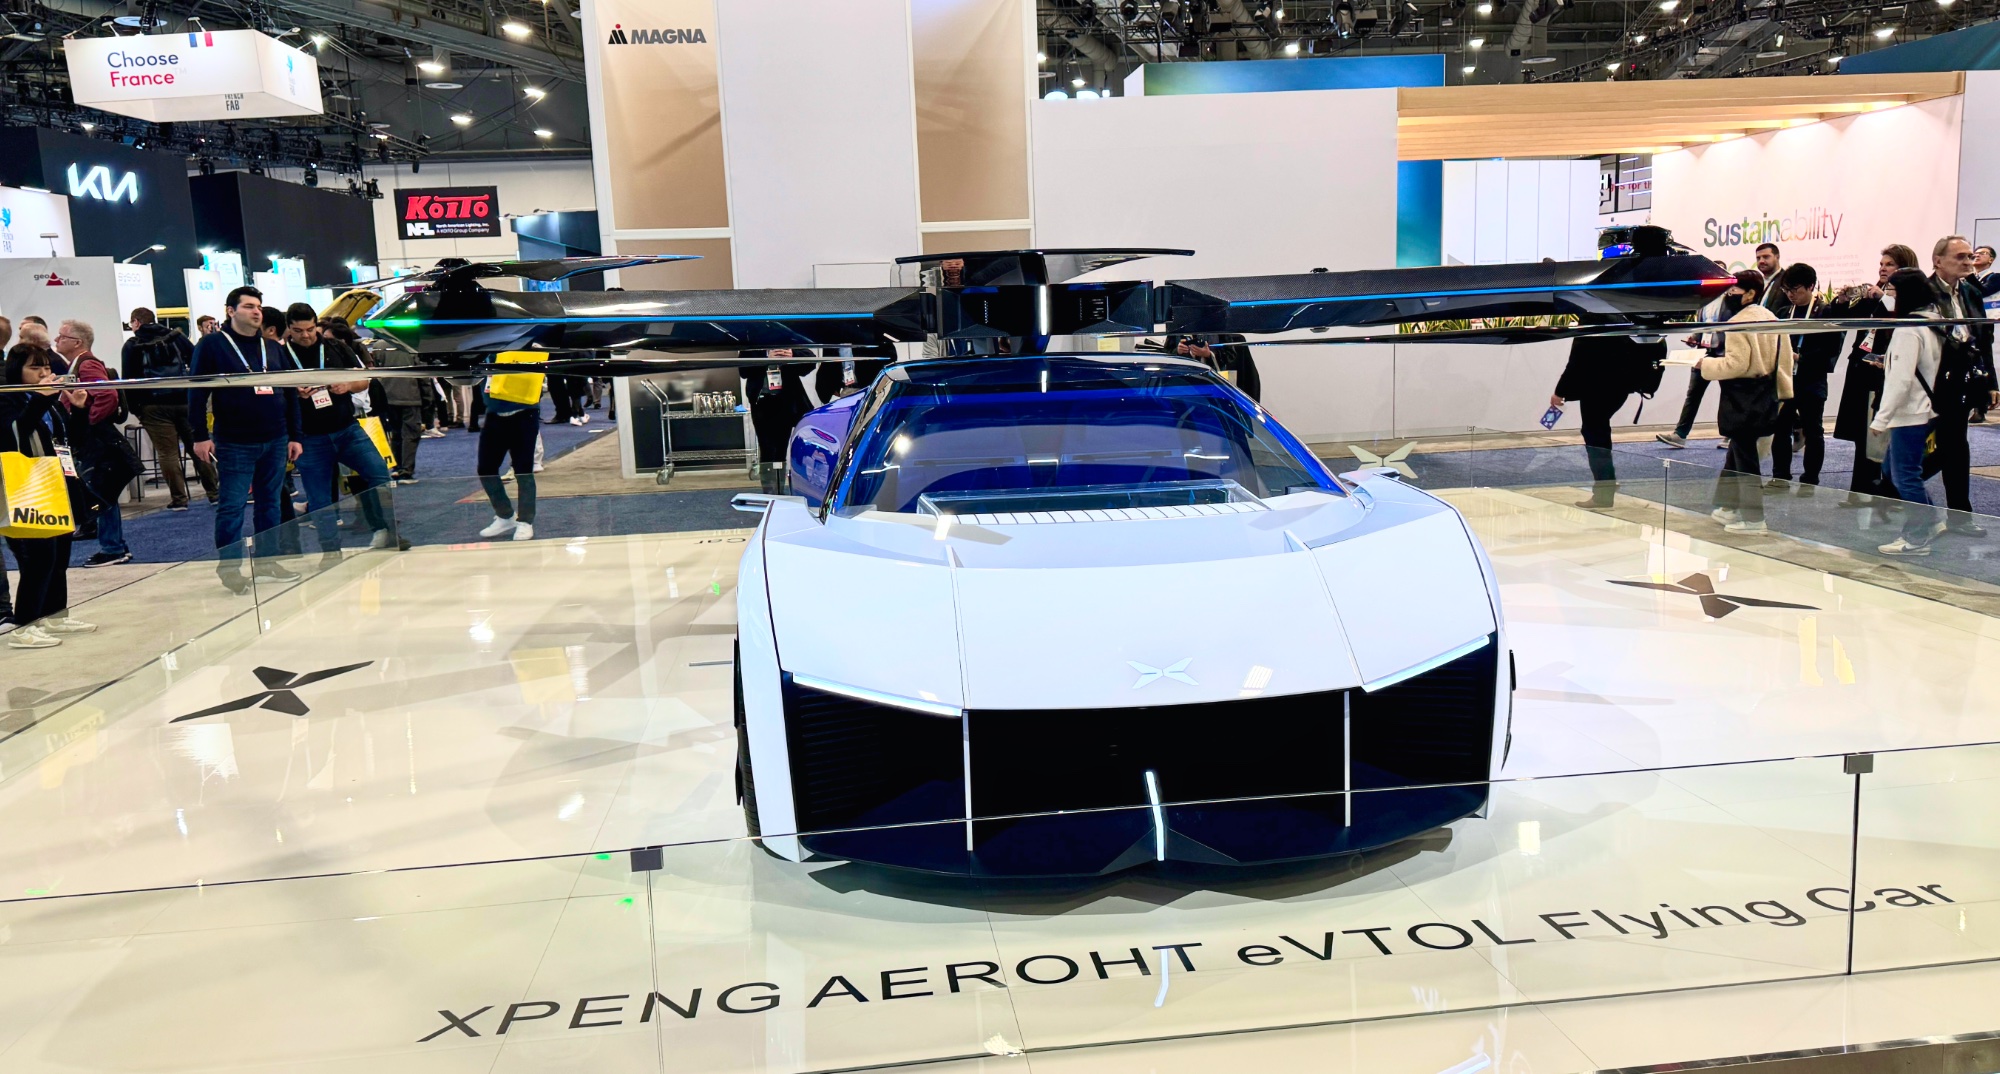 XPeng Aeroht eVTOL Flying Car vorne